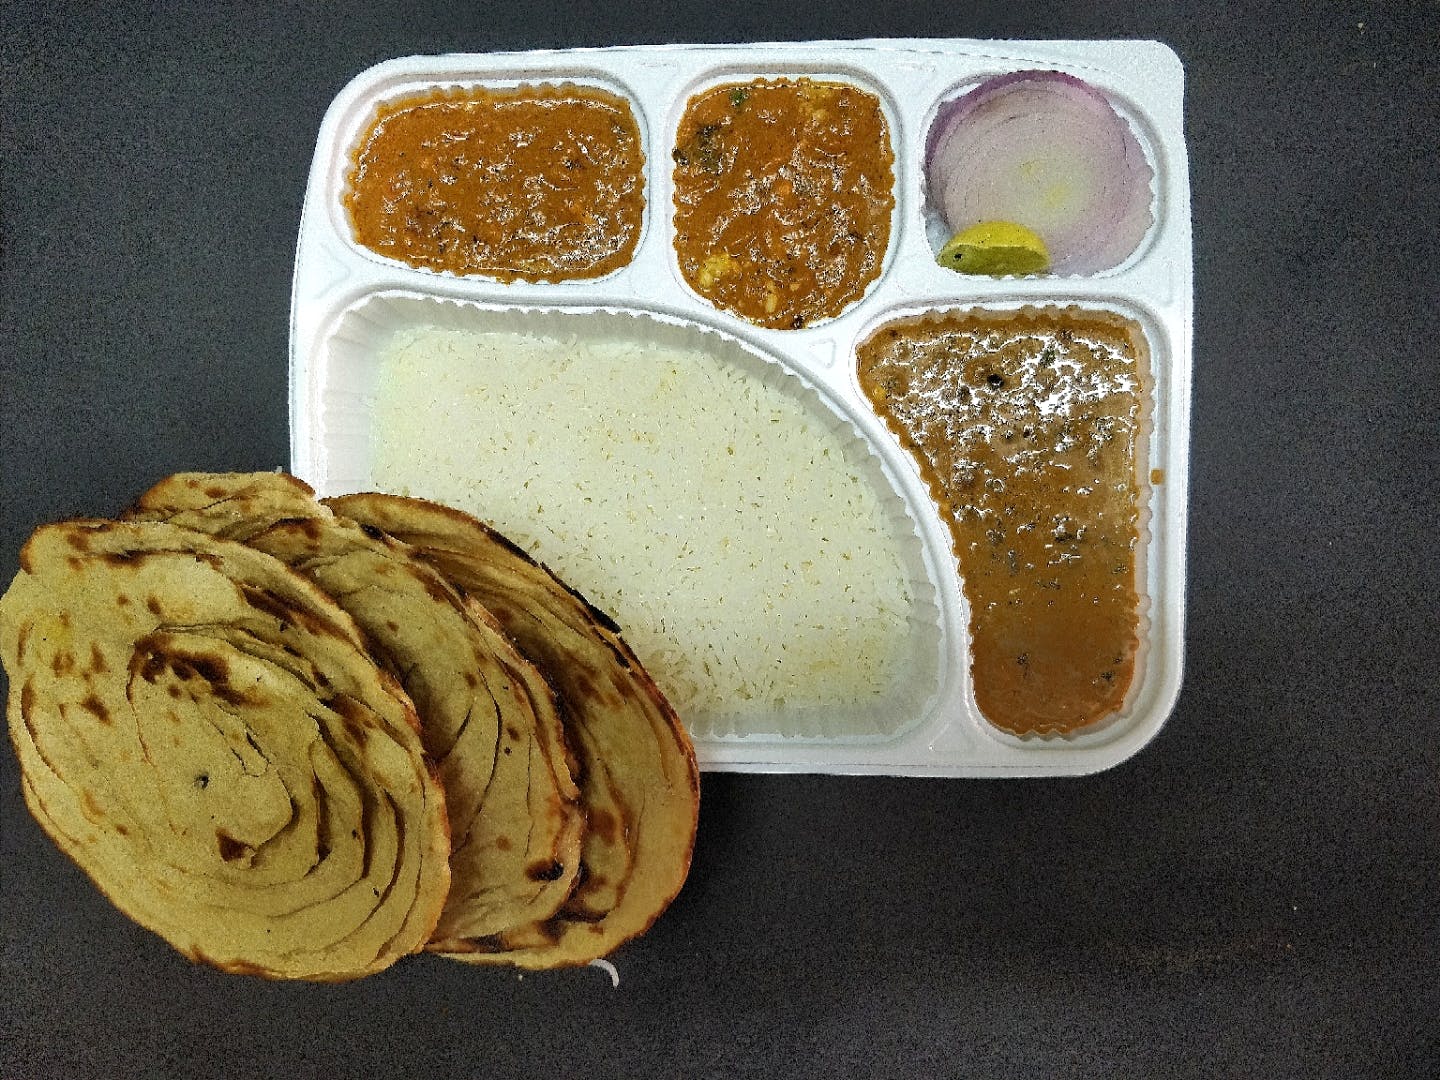 Food,Dish,Cuisine,Ingredient,Roti,Produce,Indian cuisine